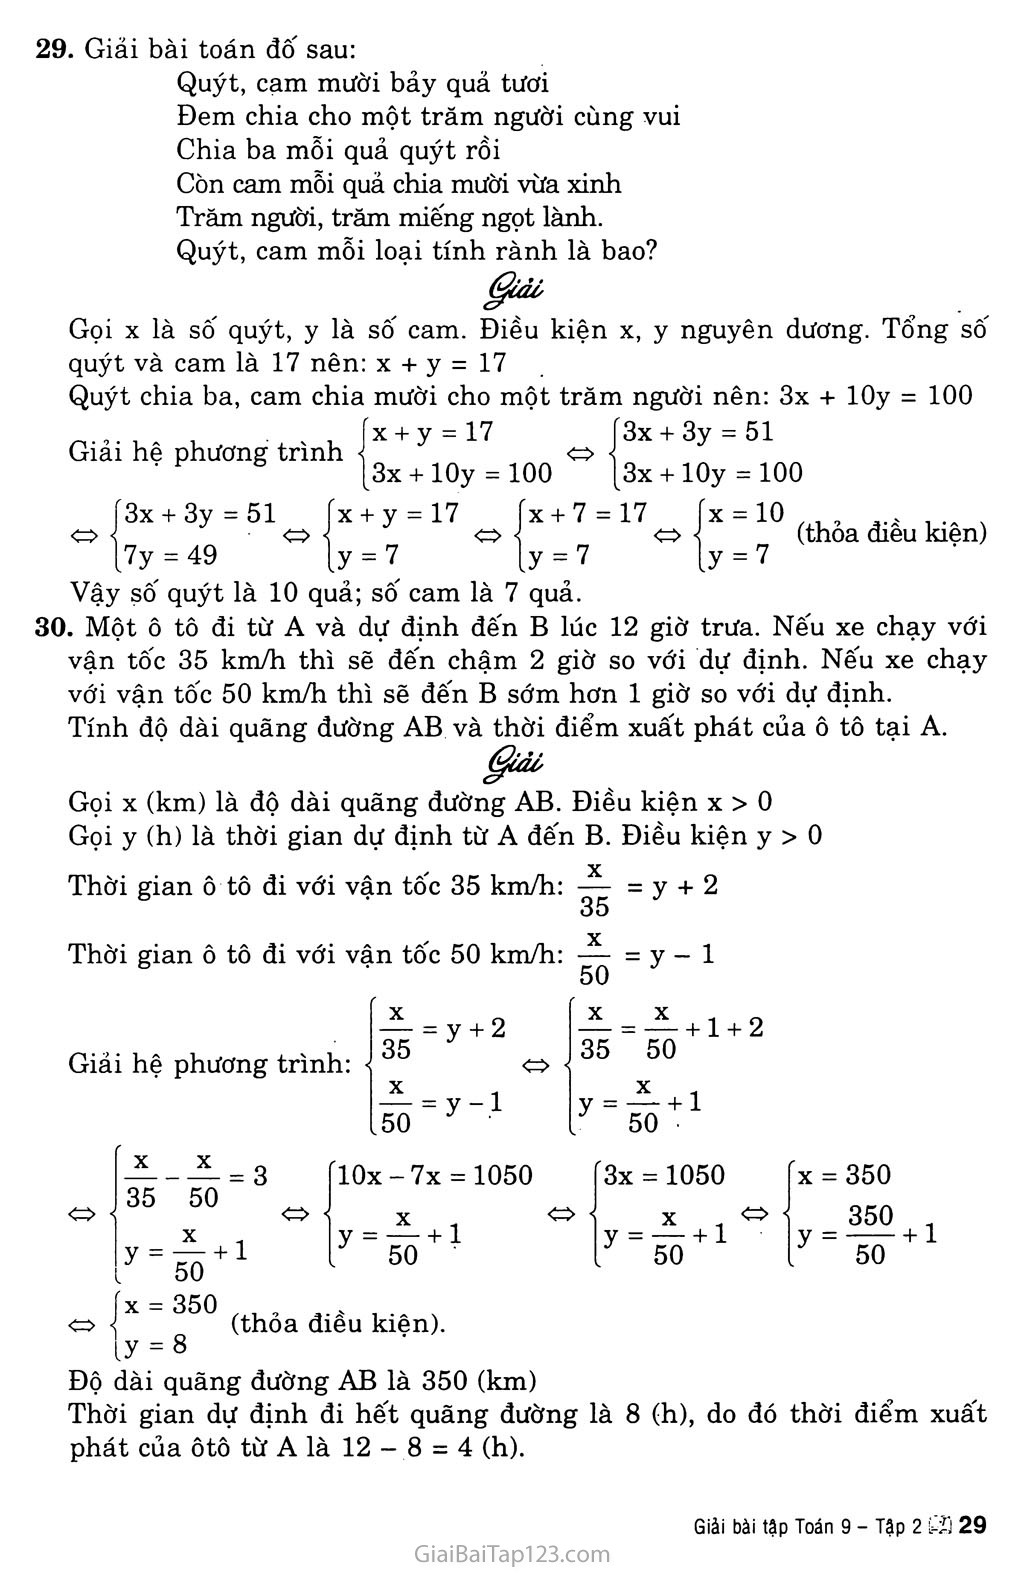 Bài 5. Giải bài toán bằng cách lập hệ phương trình trang 3